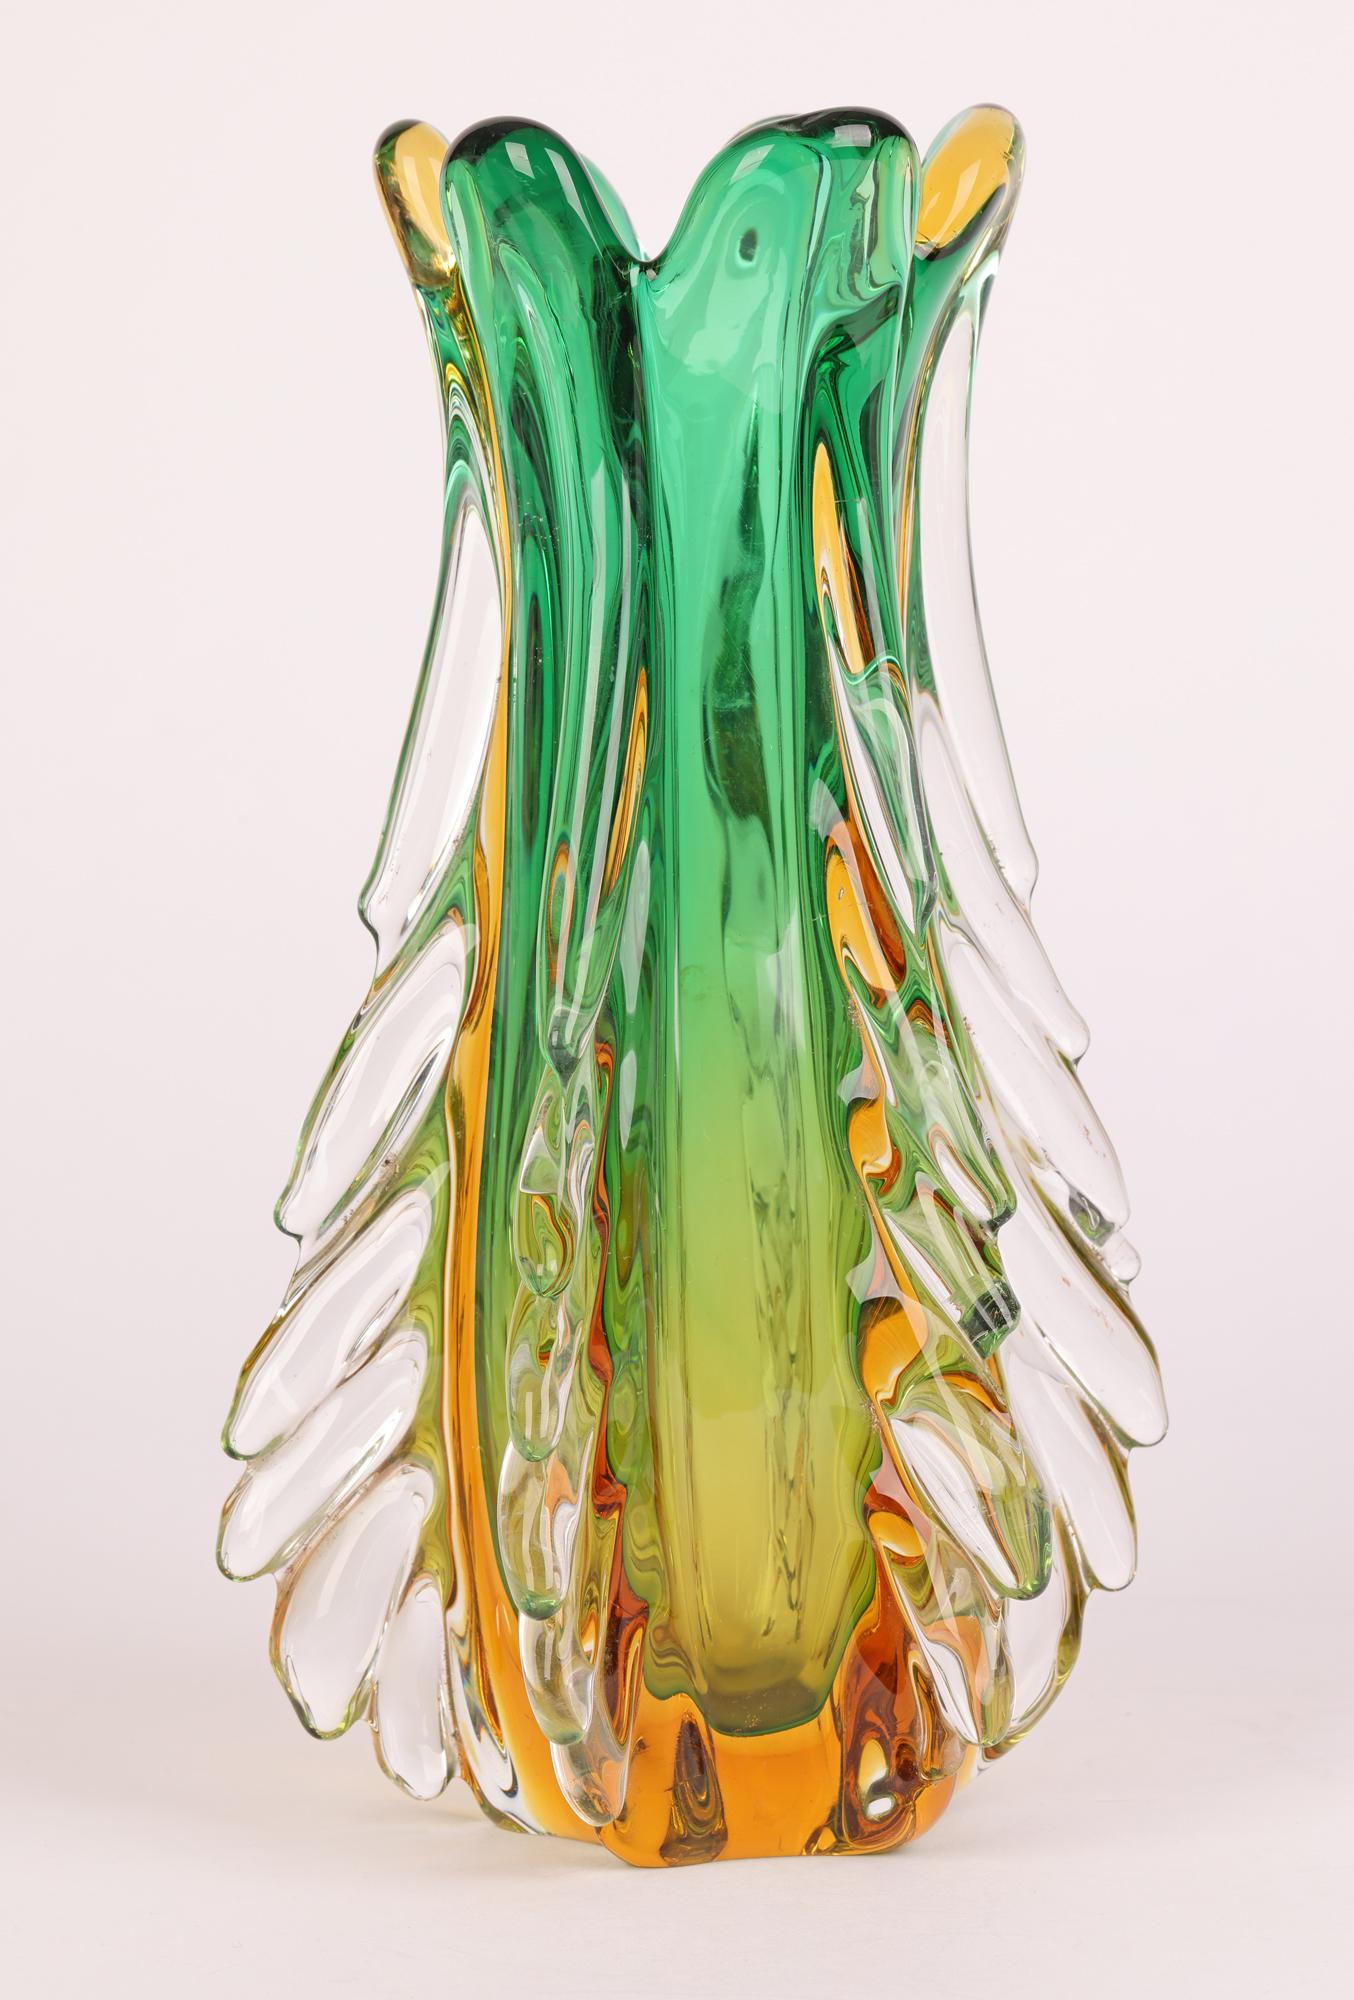 Hand-Crafted Italian Murano Sommerso Glass Vase by Flavio Poli for Seguso Vetri D’Arte